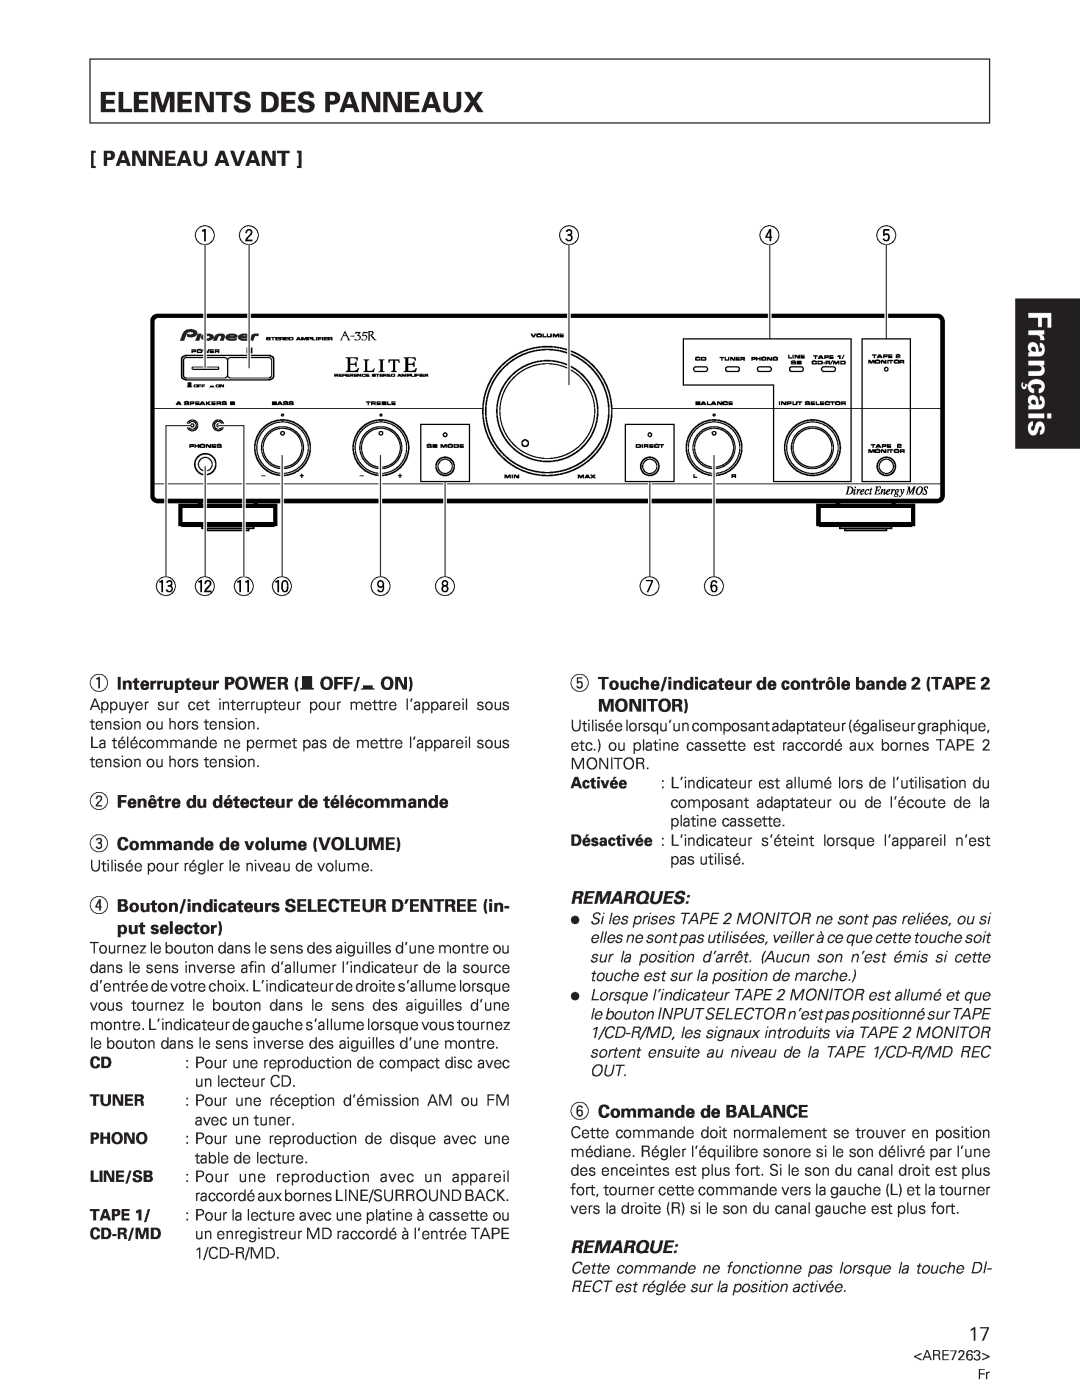 Pioneer A-35R Français, Elements Des Panneaux, Panneau Avant, 1Interrupteur POWER Ñ OFF/ ON, 3Commande de volume VOLUME 